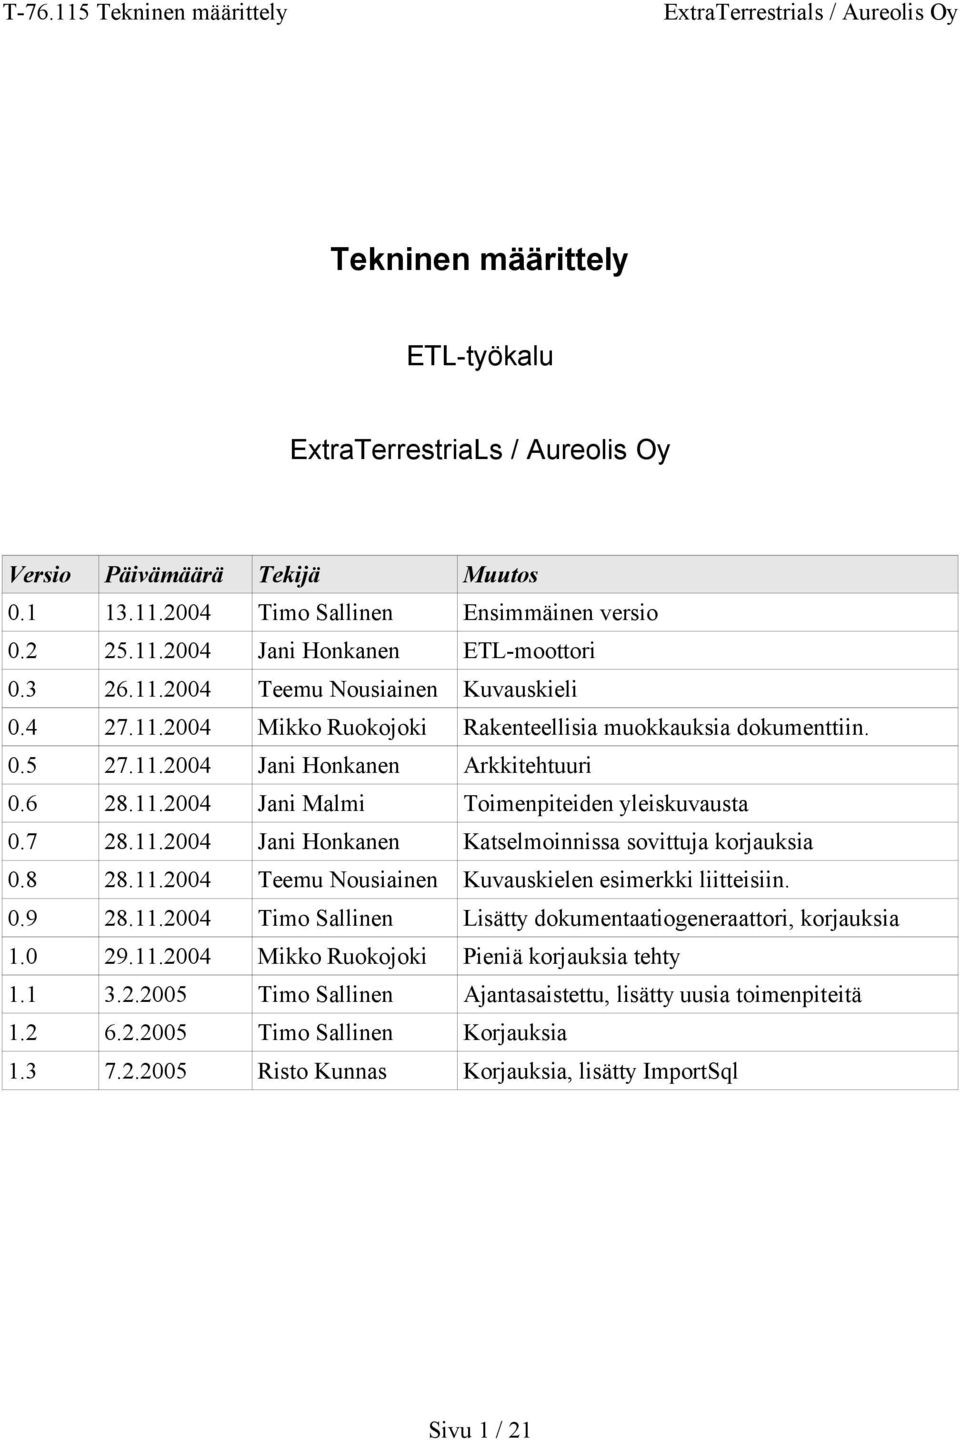 8 28.11.2004 Teemu Nousiainen Kuvauskielen esimerkki liitteisiin. 0.9 28.11.2004 Timo Sallinen Lisätty dokumentaatiogeneraattori, korjauksia 1.0 29.11.2004 Mikko Ruokojoki Pieniä korjauksia tehty 1.